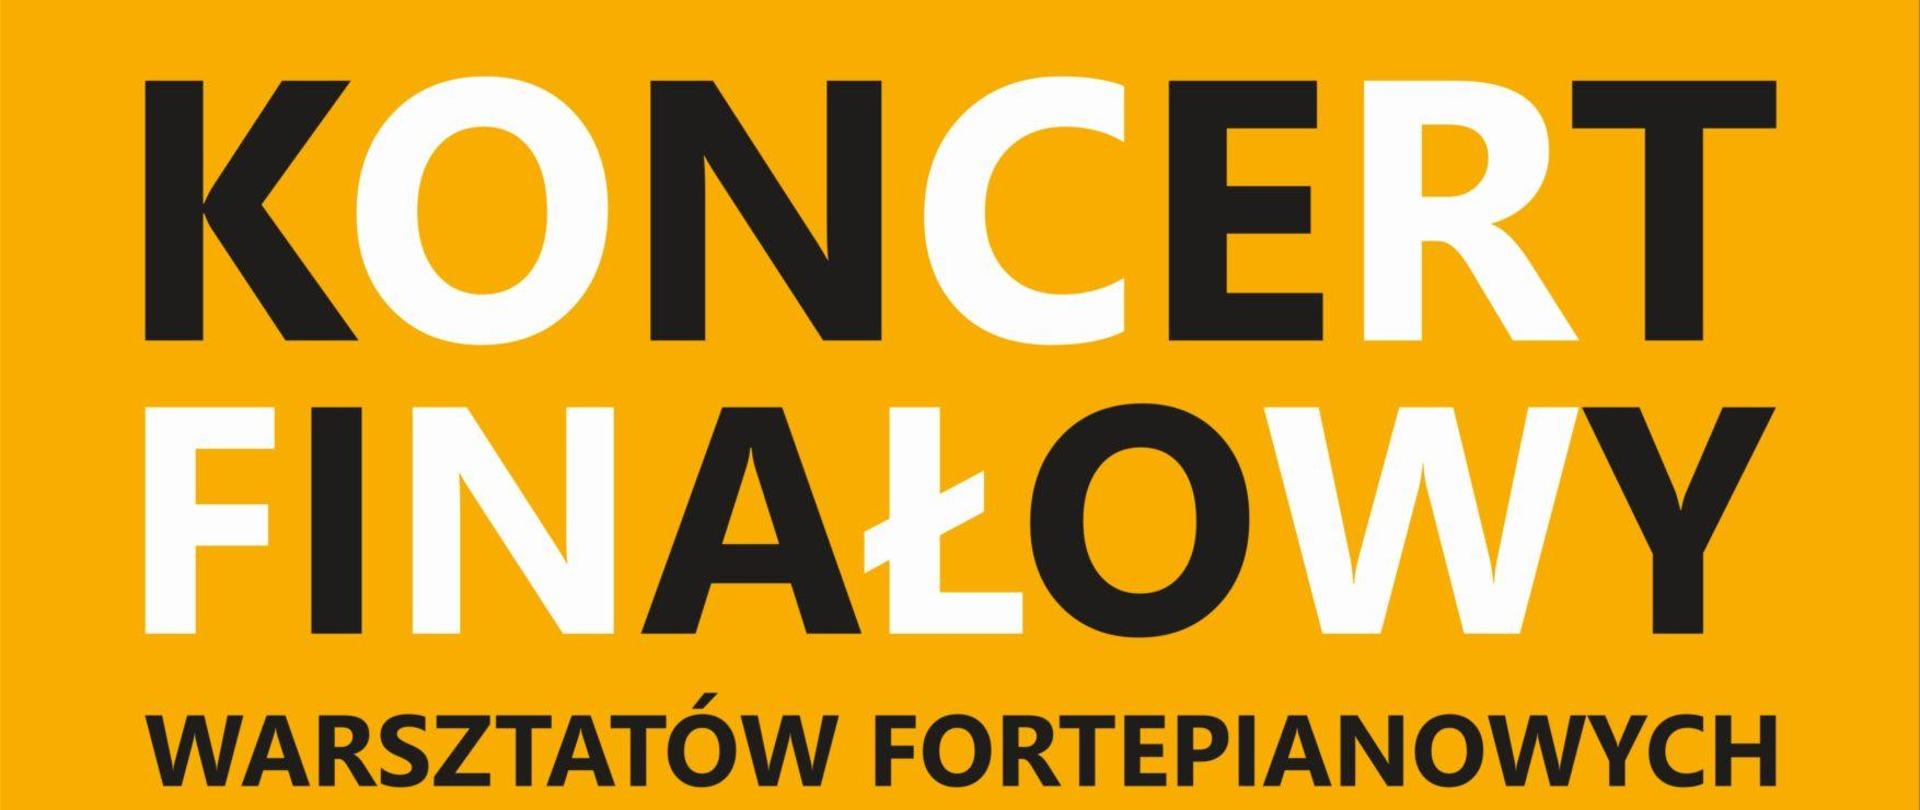 Zdjęcie przedstawia plakat reklamujący koncert finałowy warsztatów fortepianowych. U góry kolor żółty, na dole kolor czarny. Po środku plakatu graficzny rysunek klawiatury fortepianu.